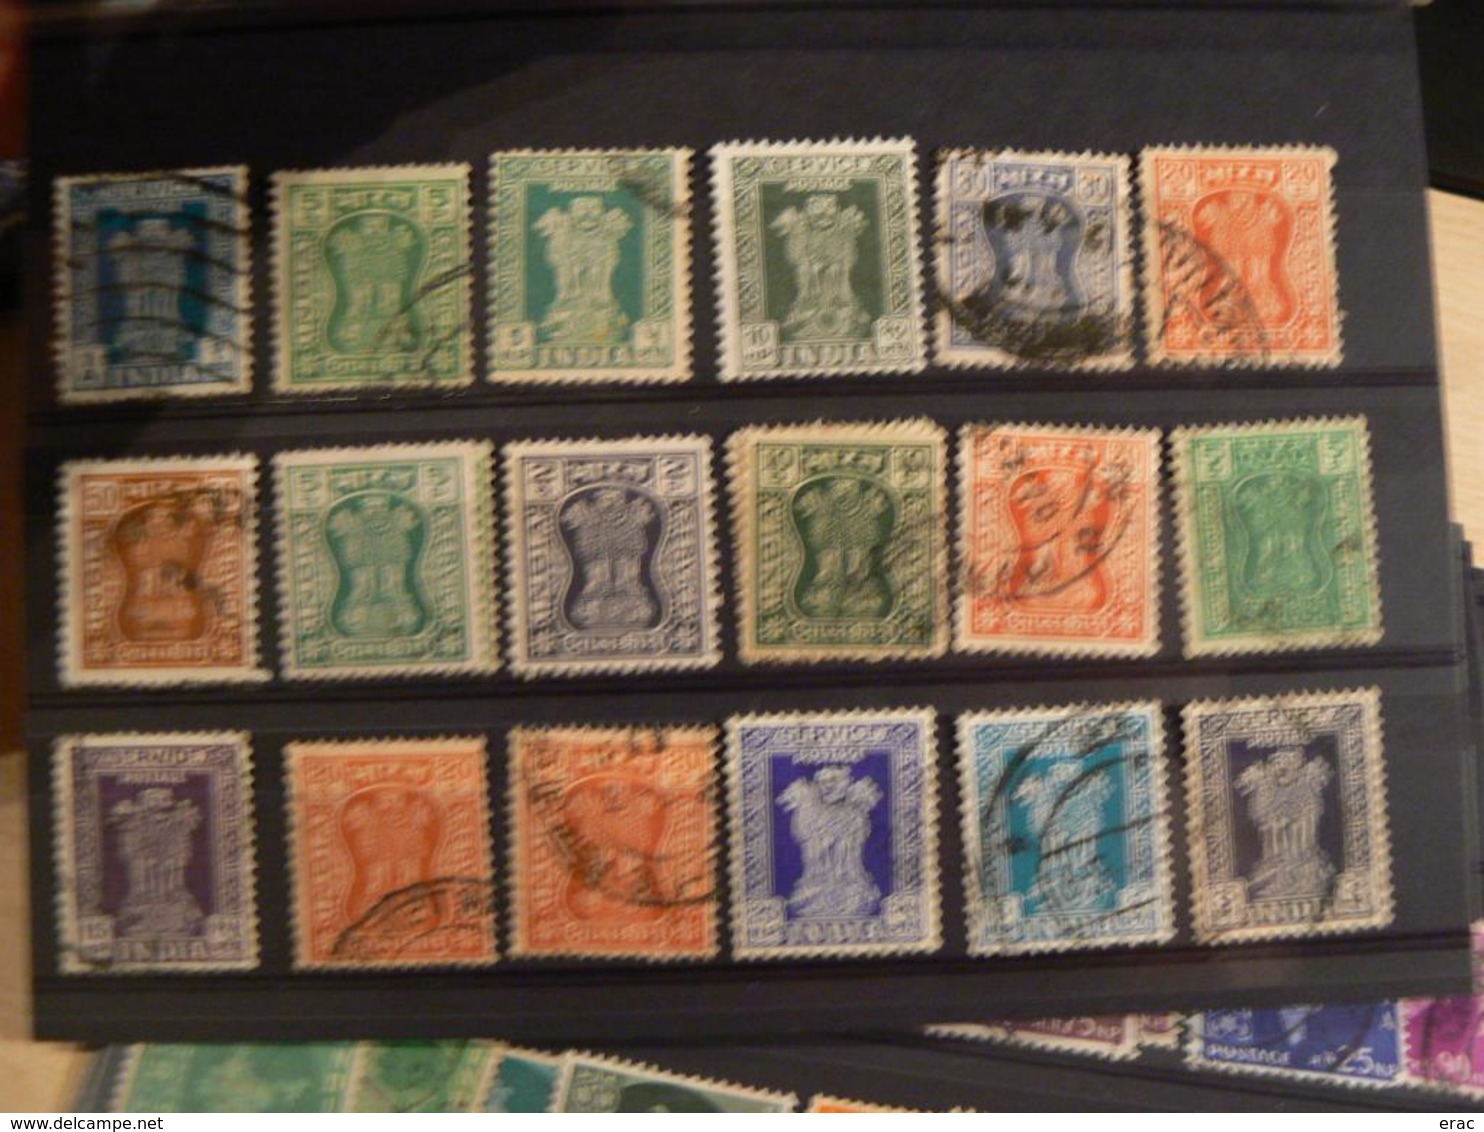 INDE - Lot de timbres anciens et plus récents